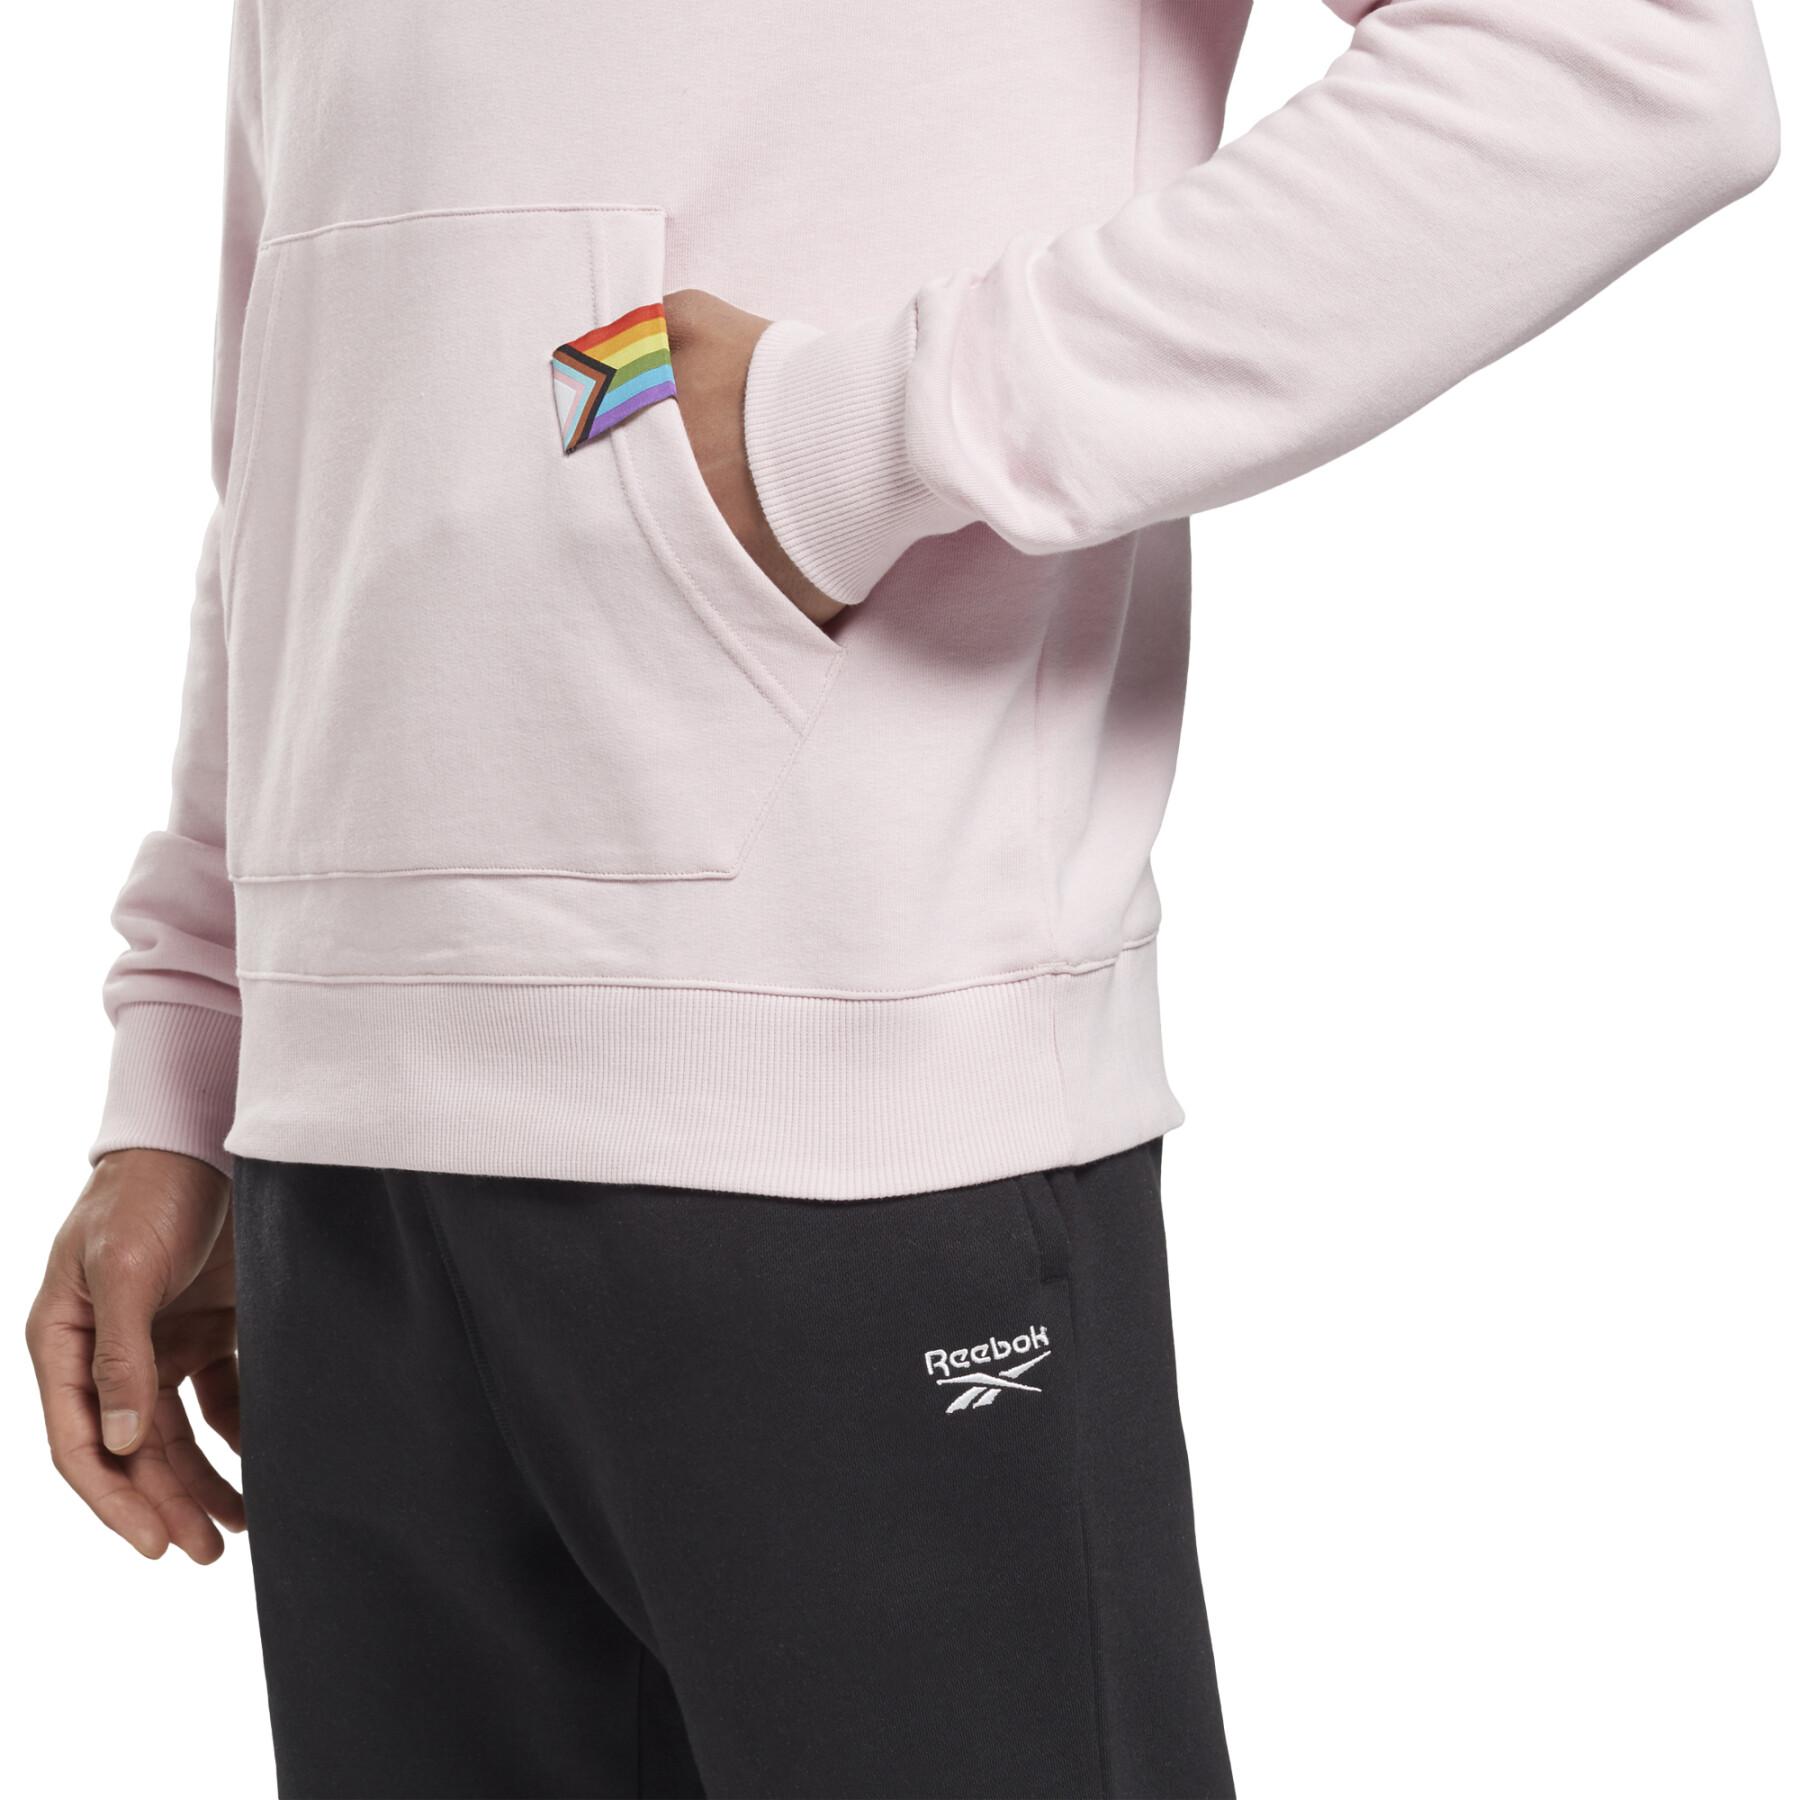 Reeboktech pride-hoodie